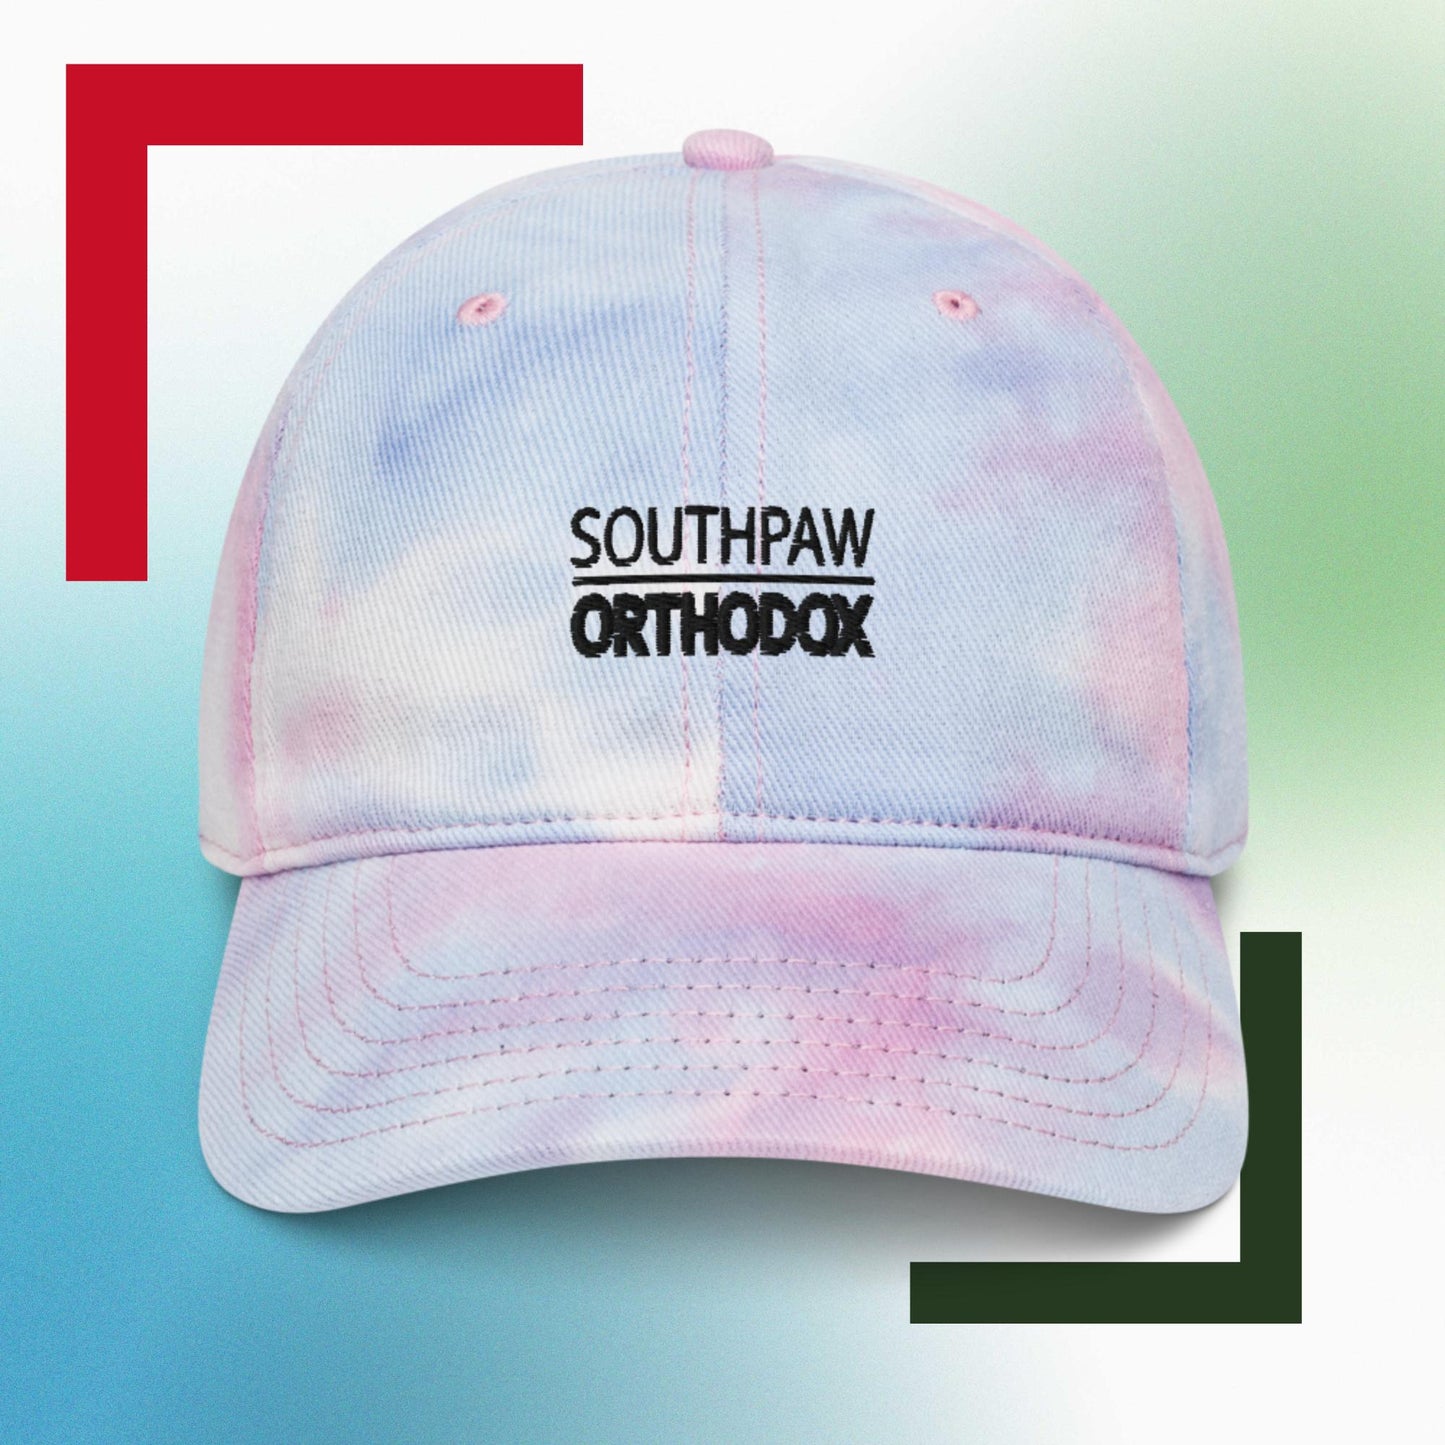 Sweet Science Sports Southpaw Orthodox Tie dye hat